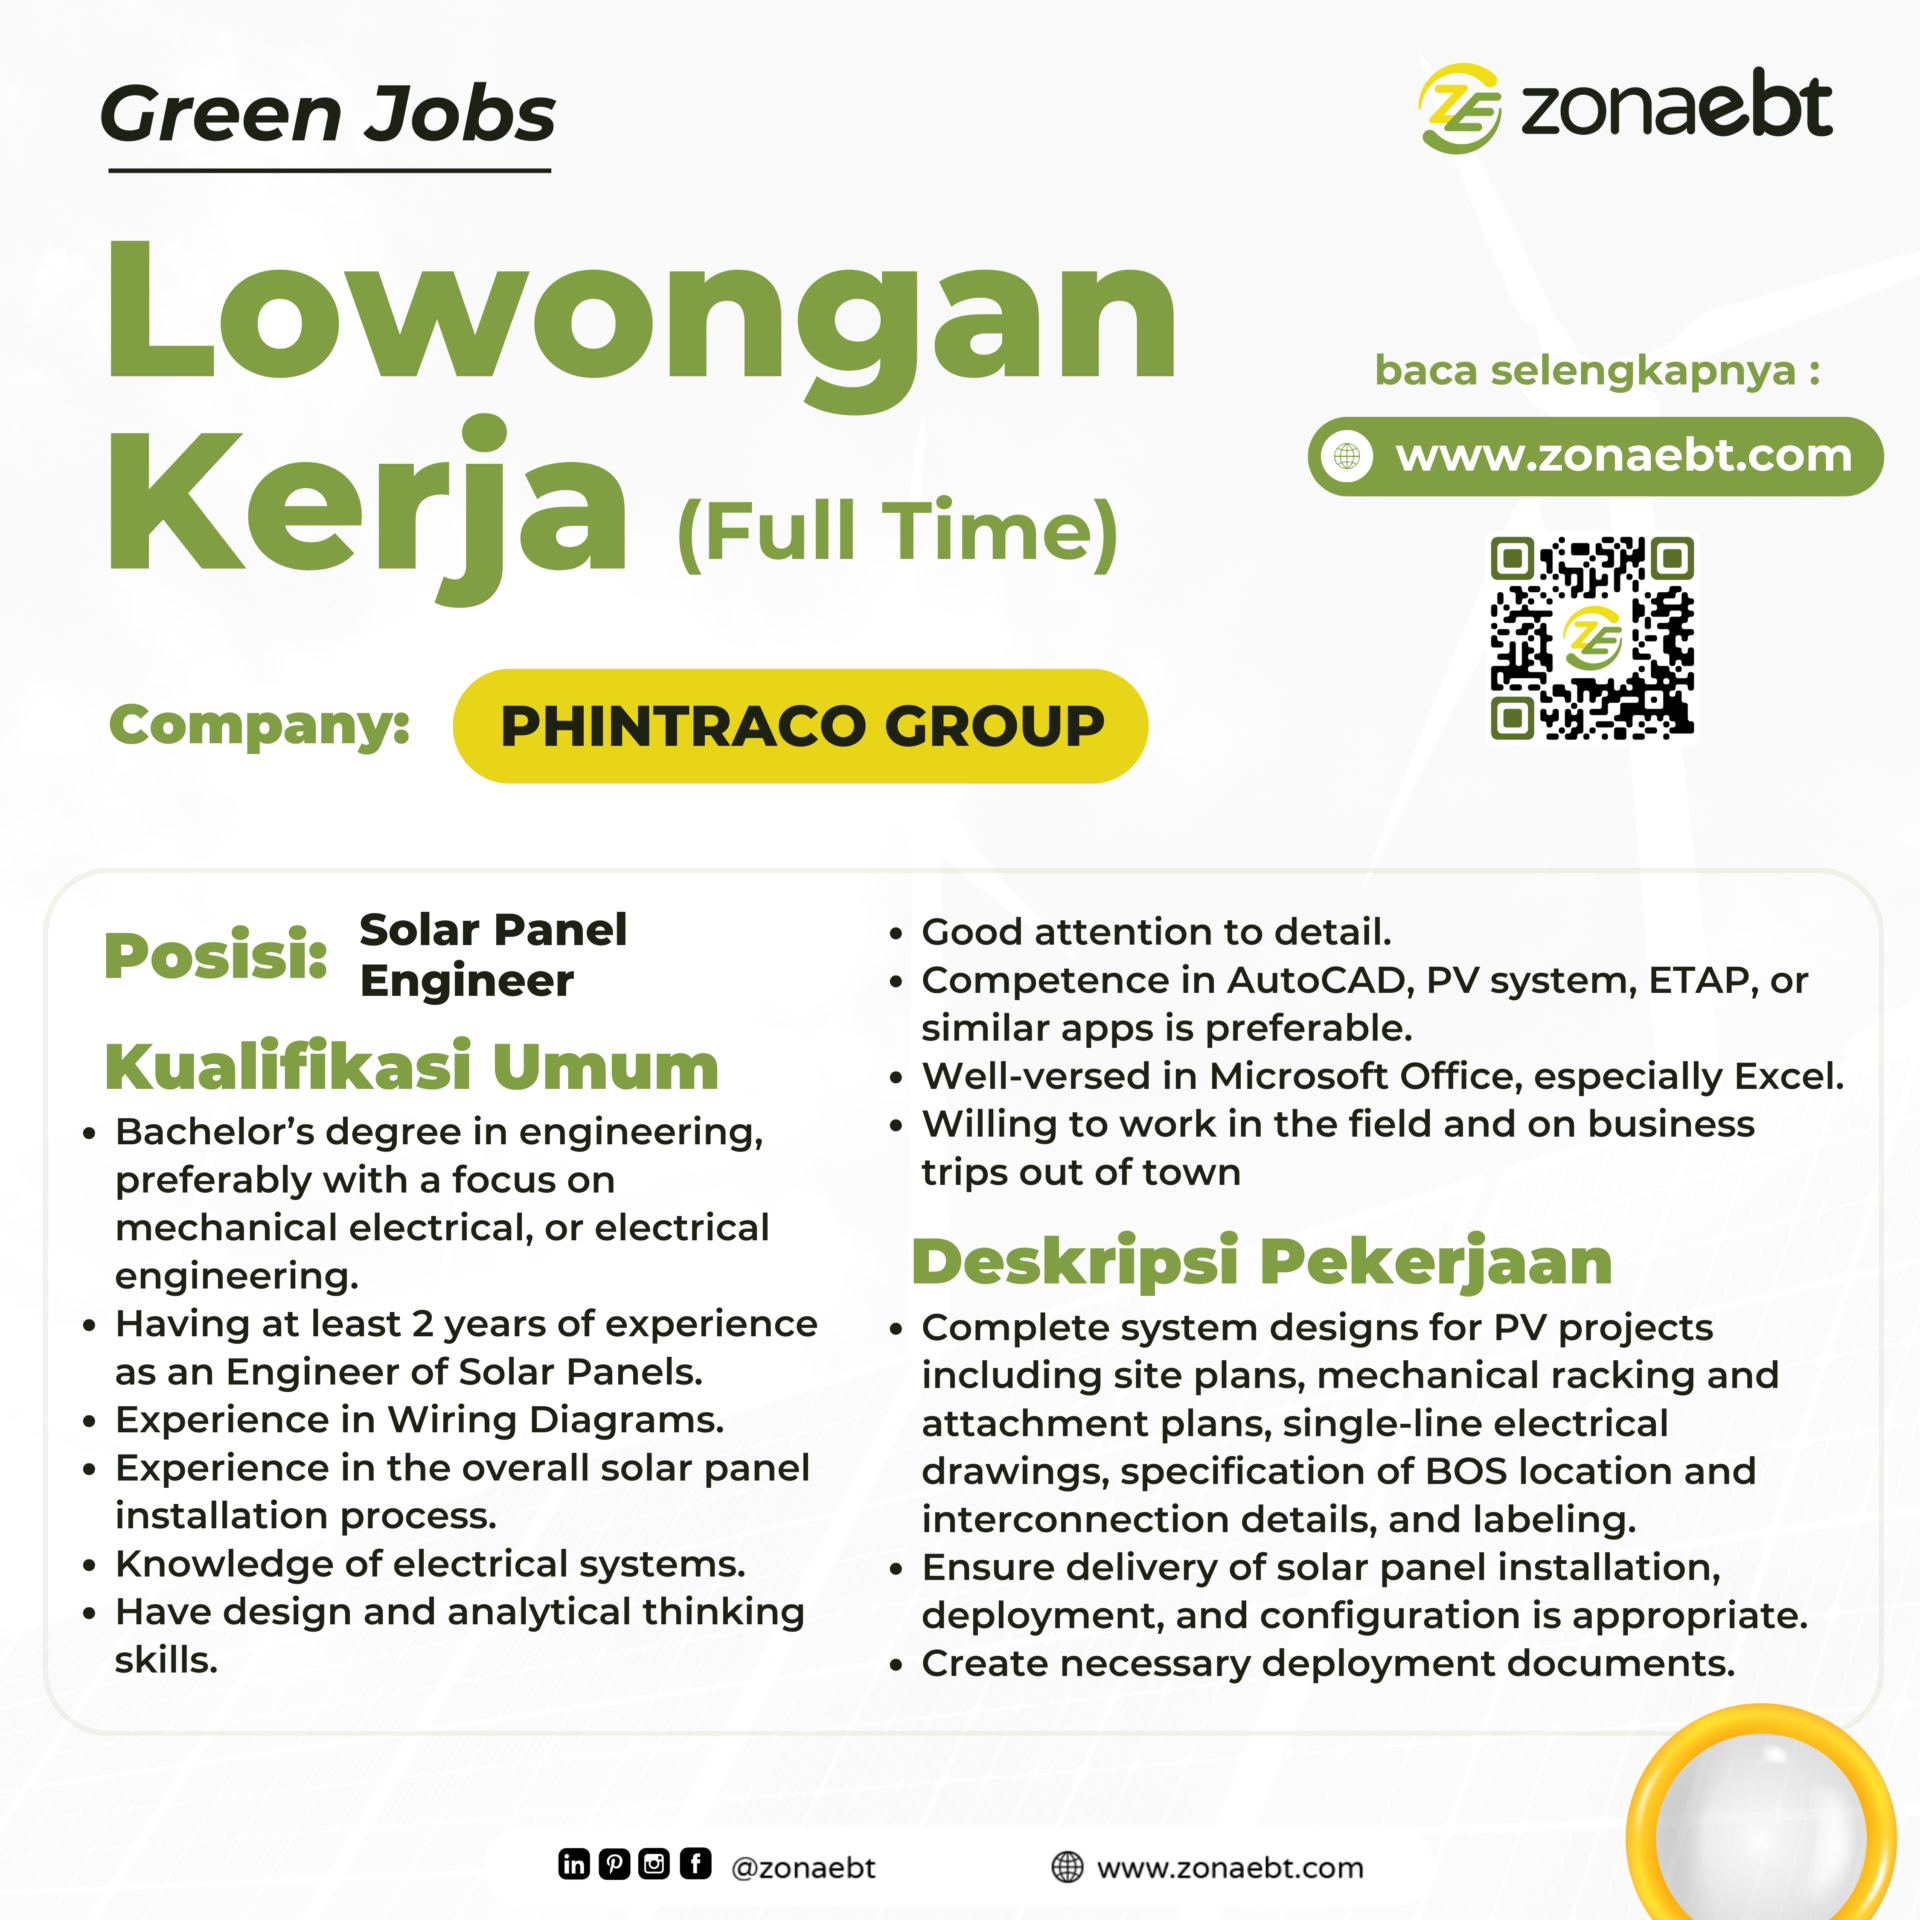 Post Solar Panel Engineer Green jobs zonaebt.com